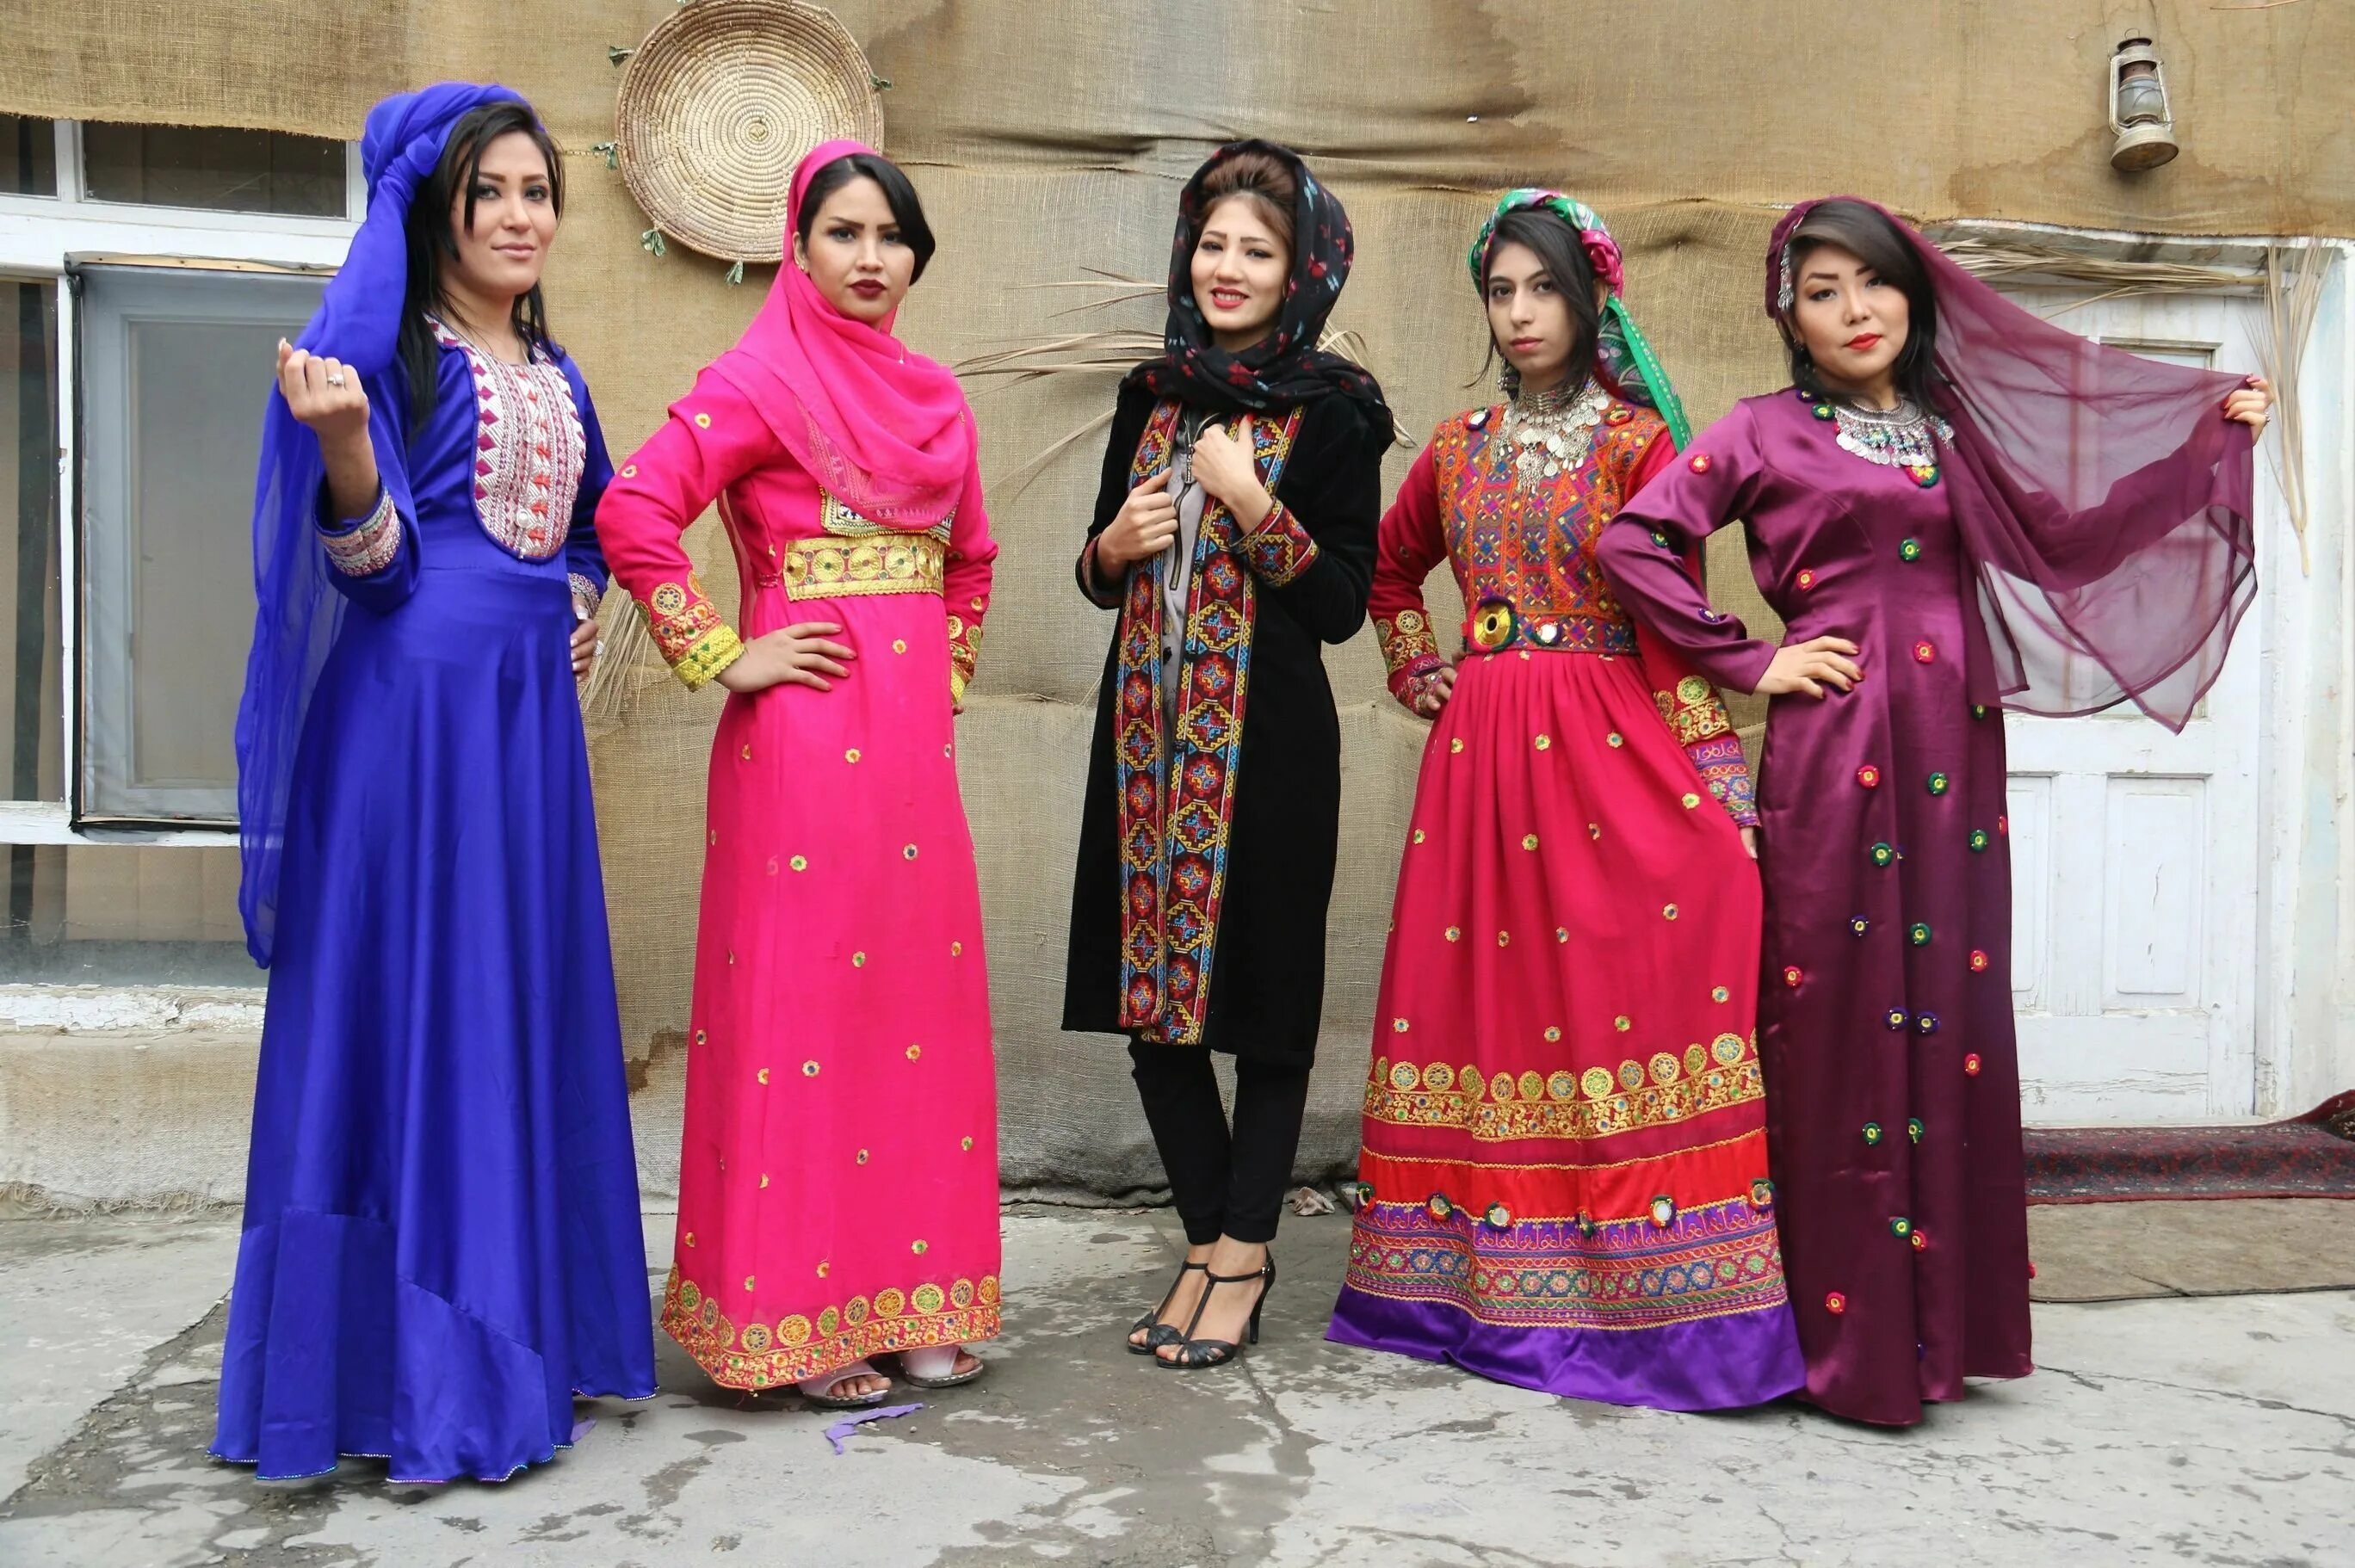 Афганистанский национальный костюм. Иранский нац костюм. Афганская одежда для женщин. Иранская одежда для женщин.